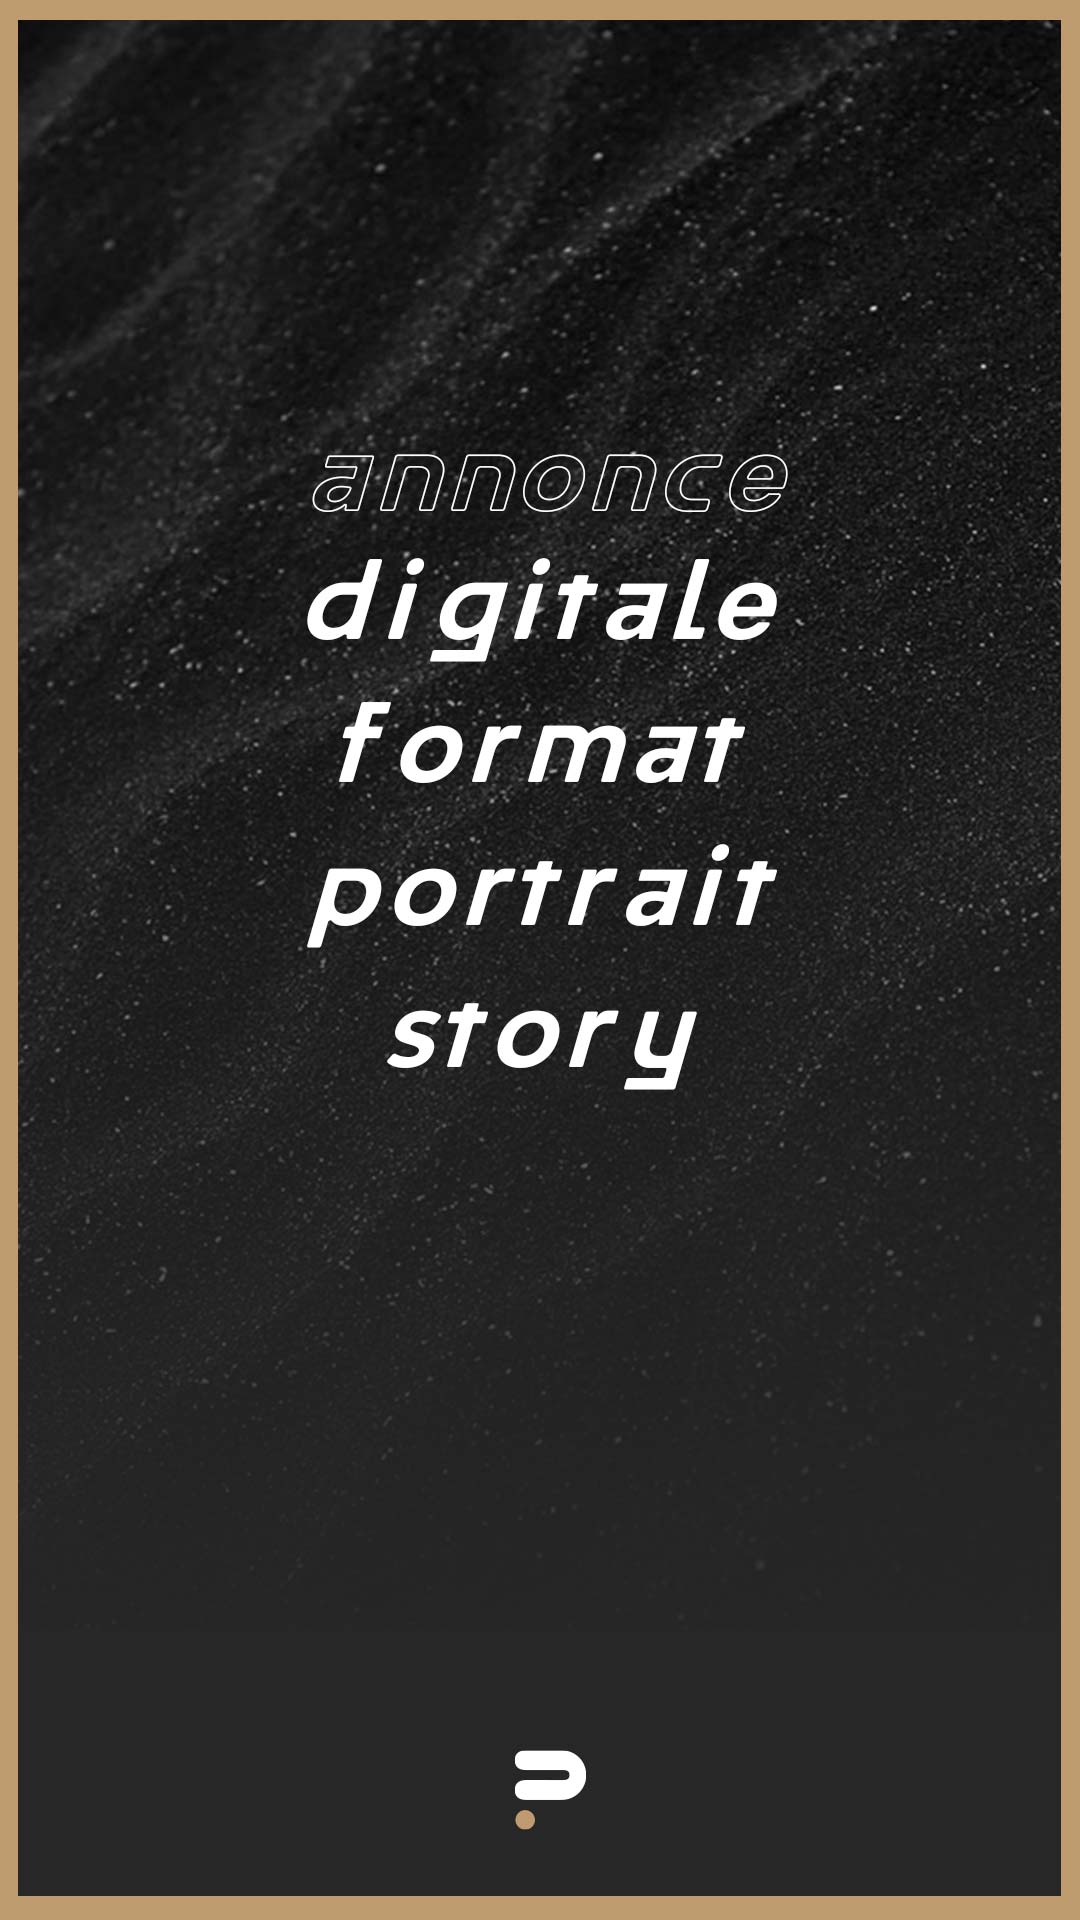 annonce digitale format portrait story